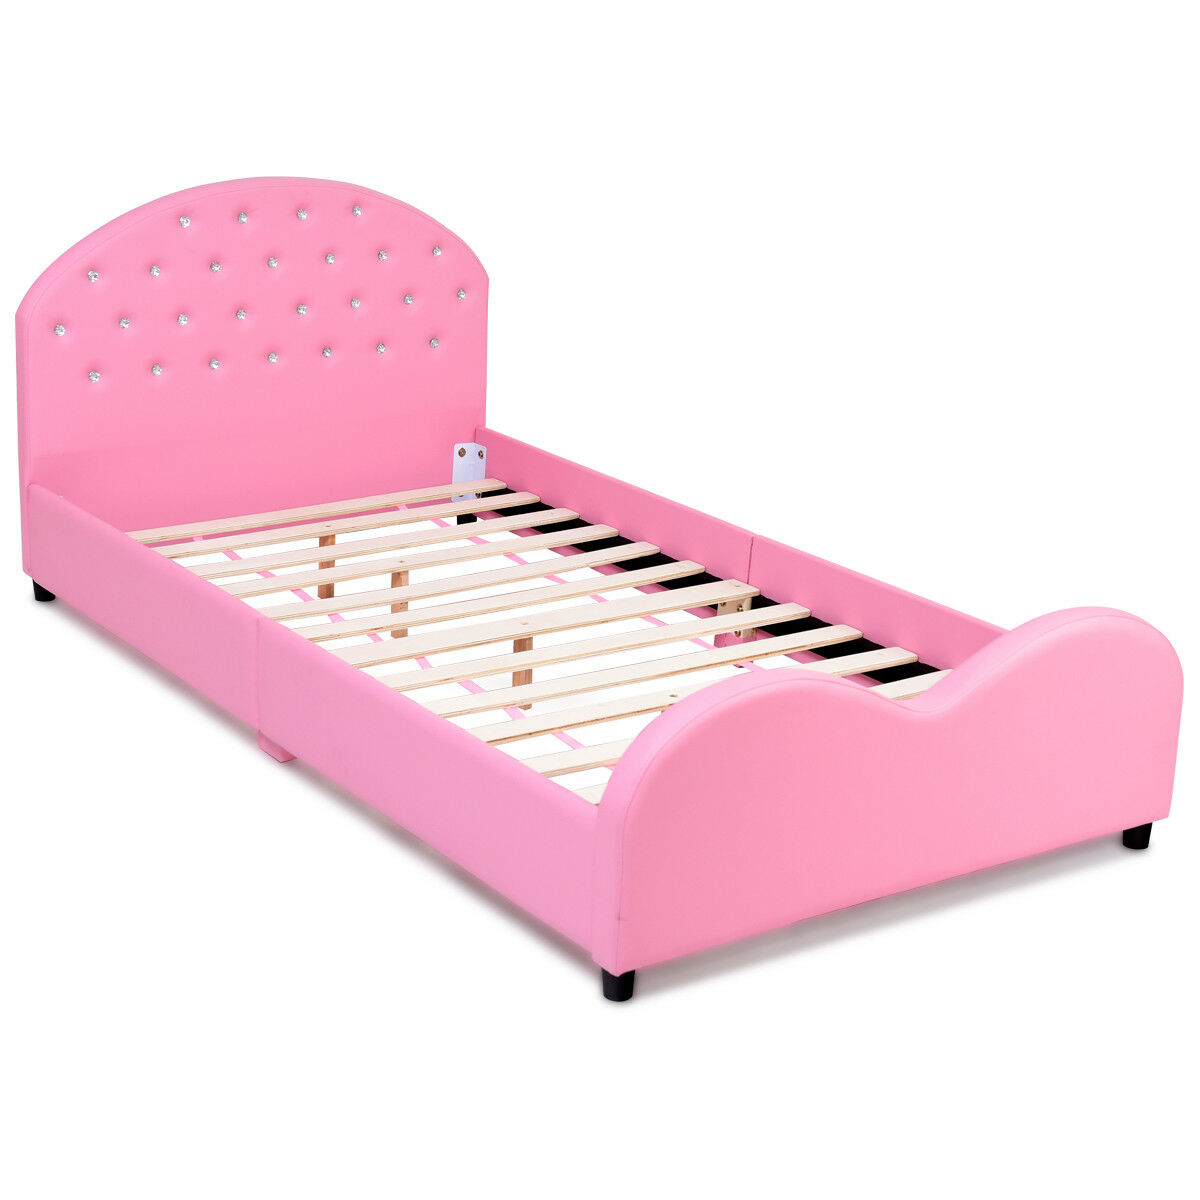 Costway Kids Children PU Upholstered Platform Wooden Princess Bed Bedroom Furniture Pink - image 7 of 9